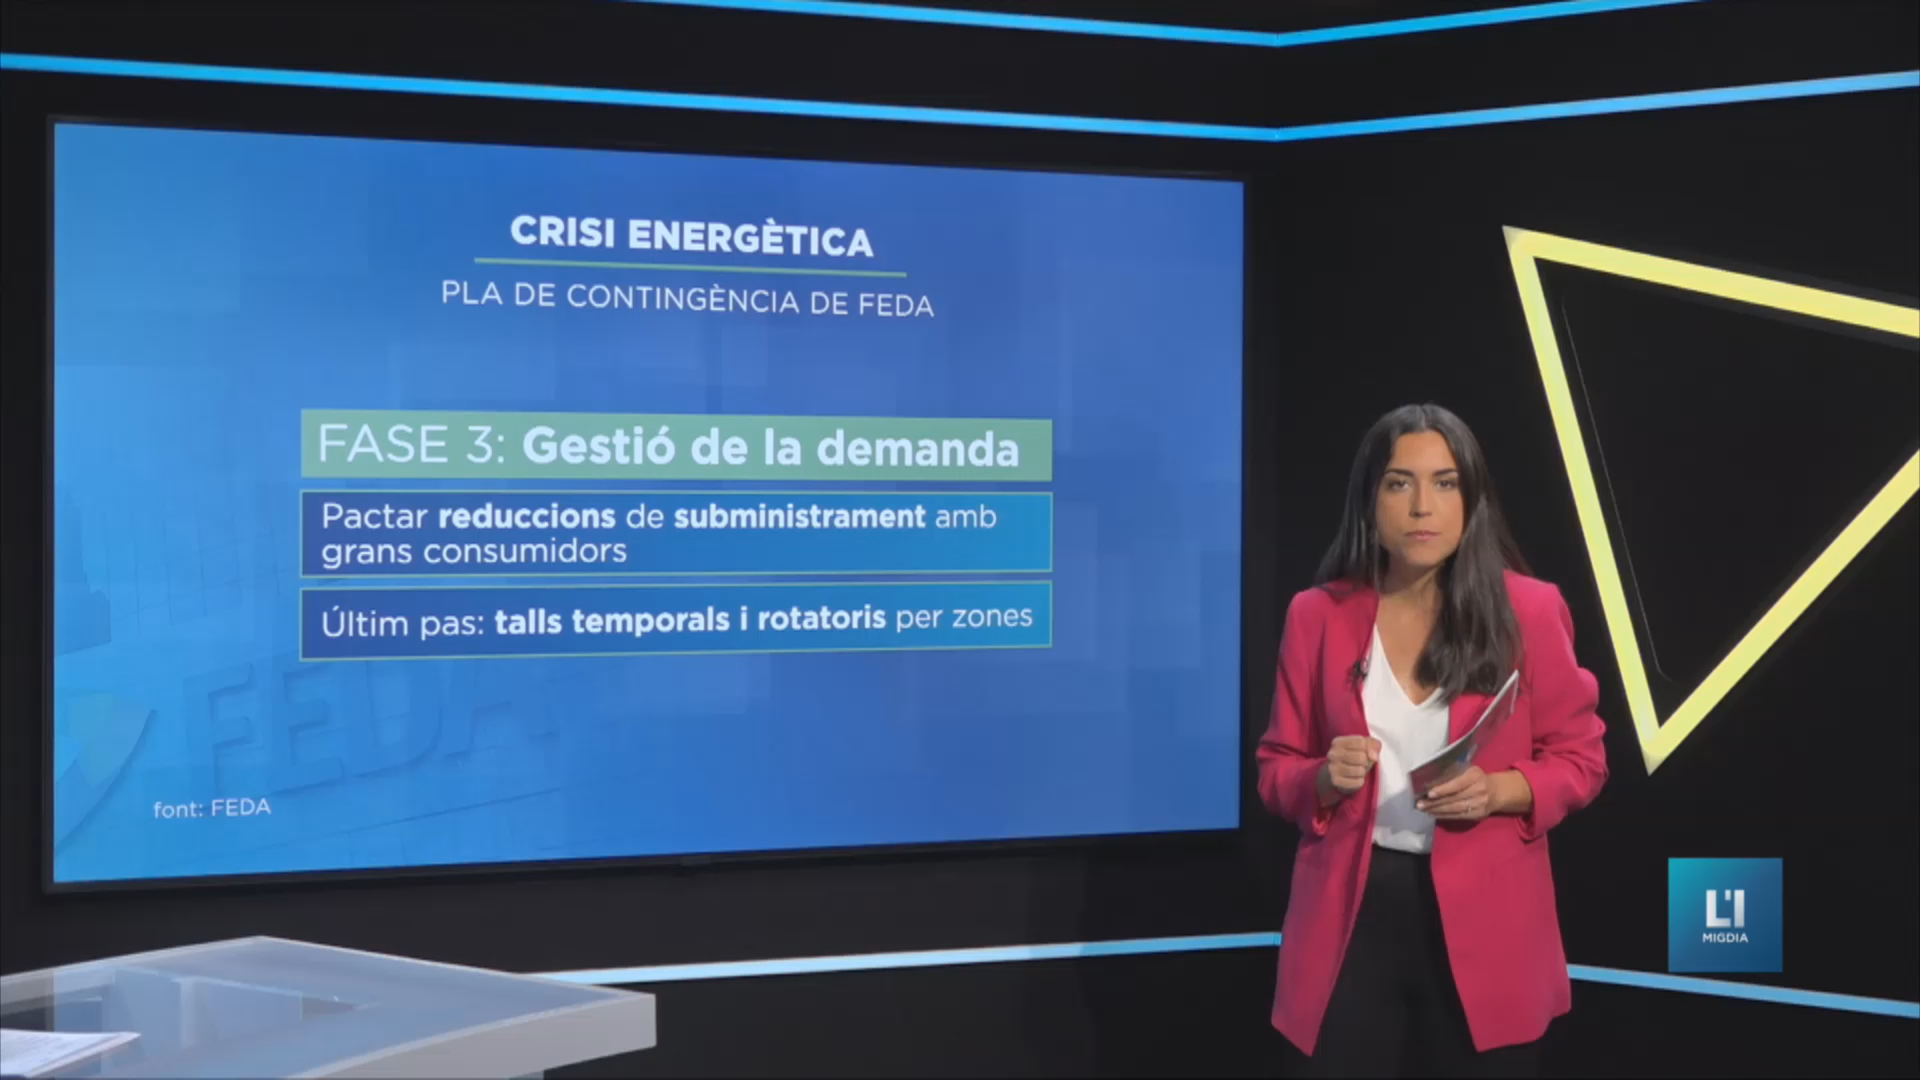 Crisi energètica: FEDA disposa d'un pla de contingència i preveu incrementar tarifes l’any vinent